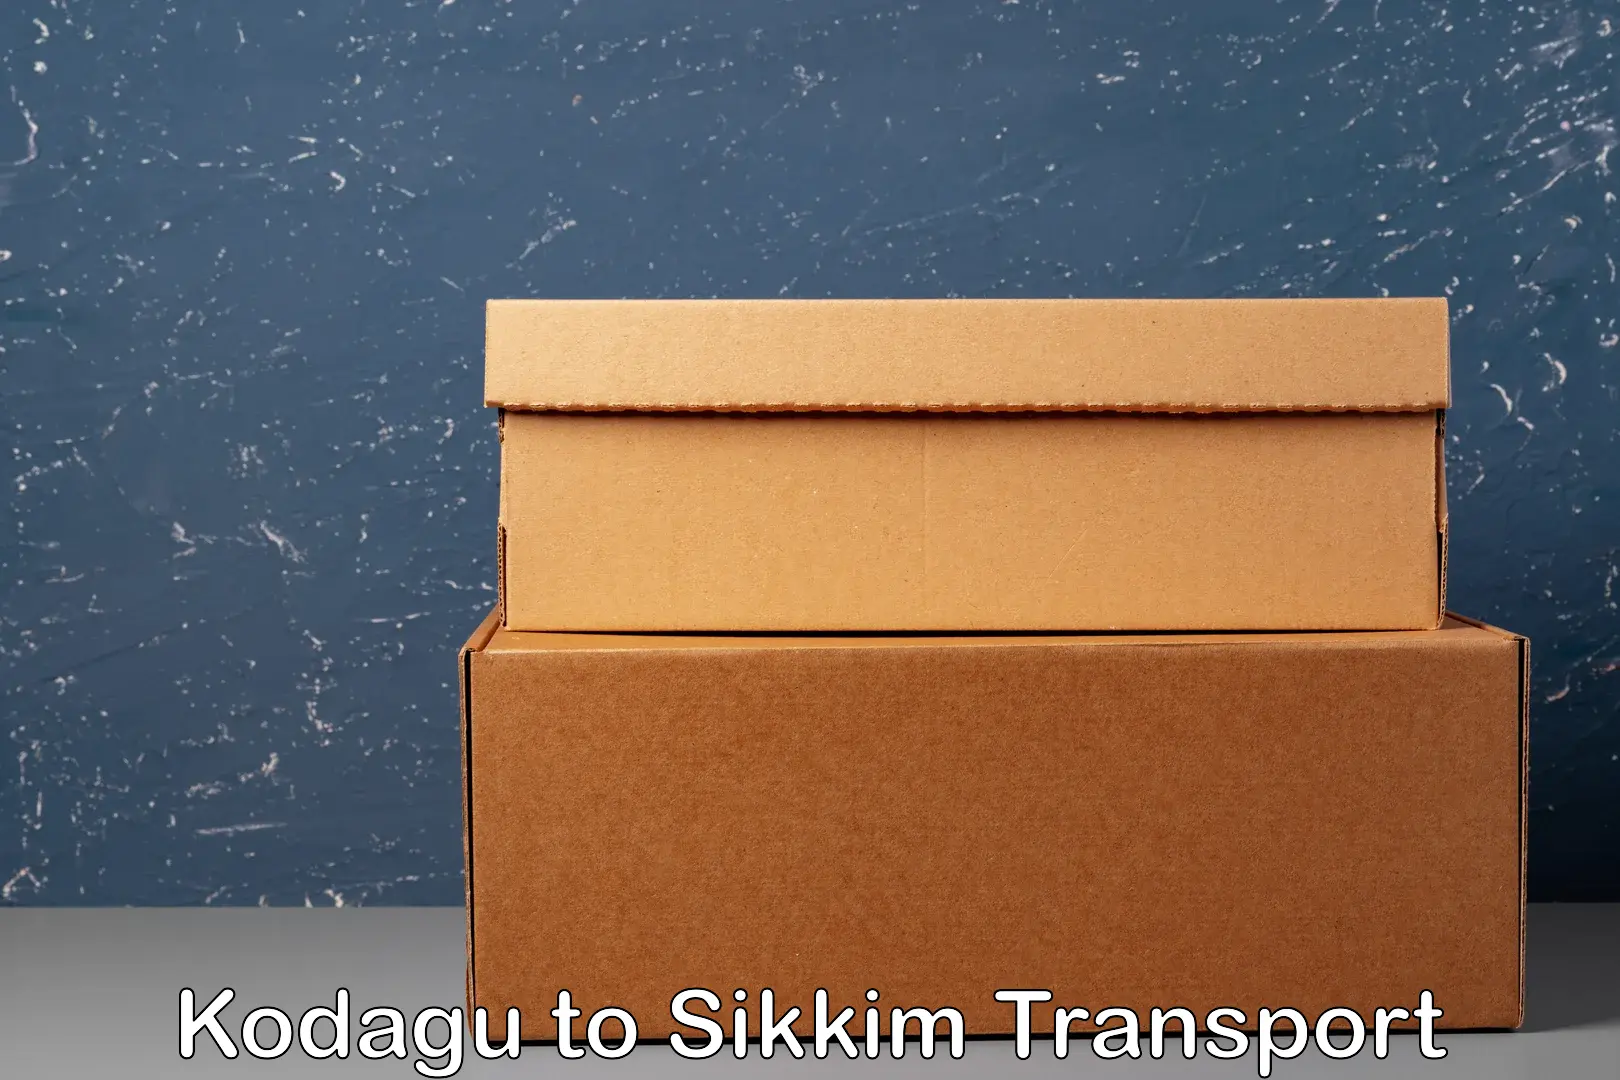 Air cargo transport services Kodagu to Jorethang